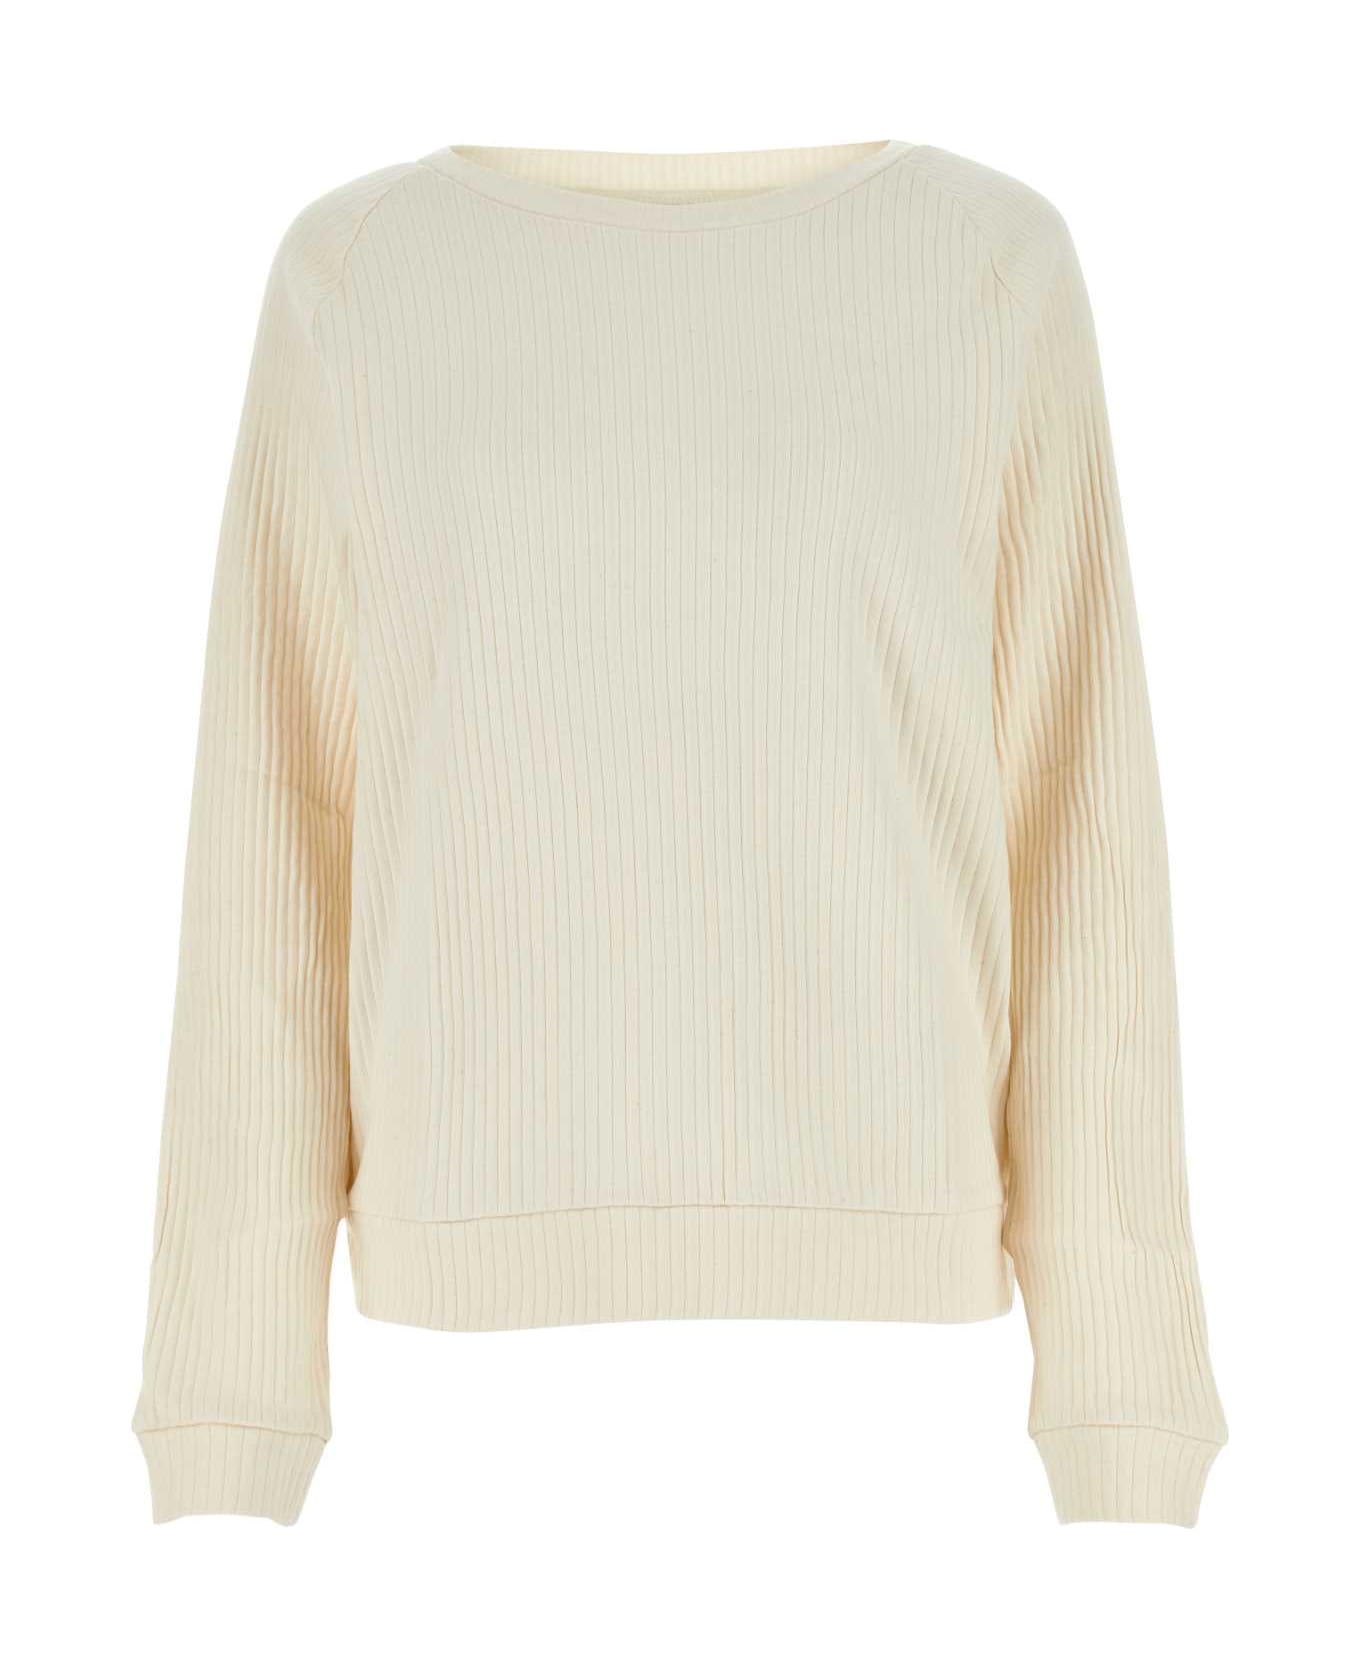 Baserange Ivory Cotton Sweatshirt - OFFWHITE